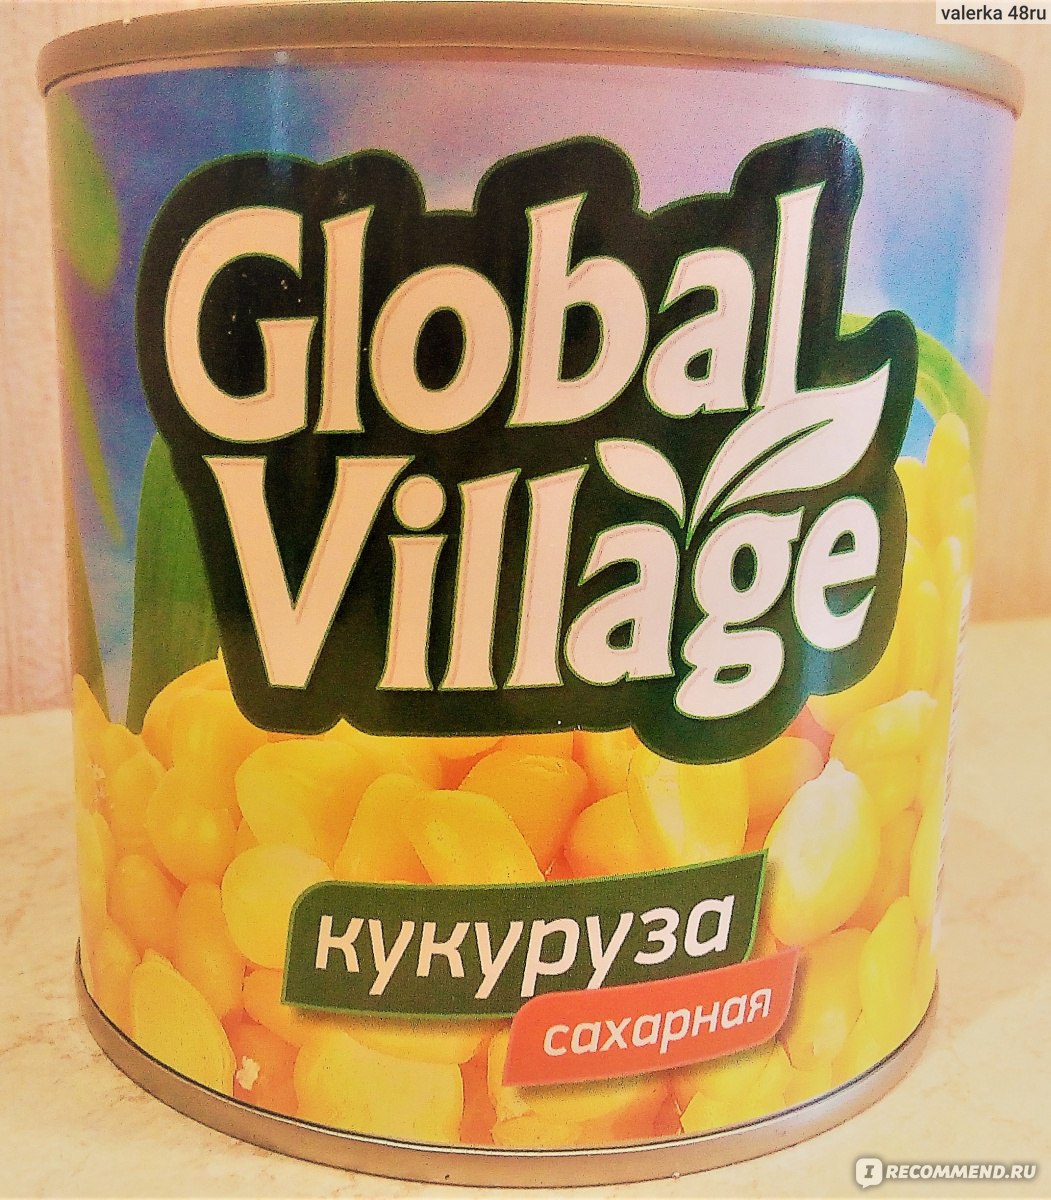 Кукуруза village. Global Village консервы овощные. Консервы Глобал Виладж. Кукуруза консервированная Глобал Виладж. Глобал Вилладж консервы овощные.